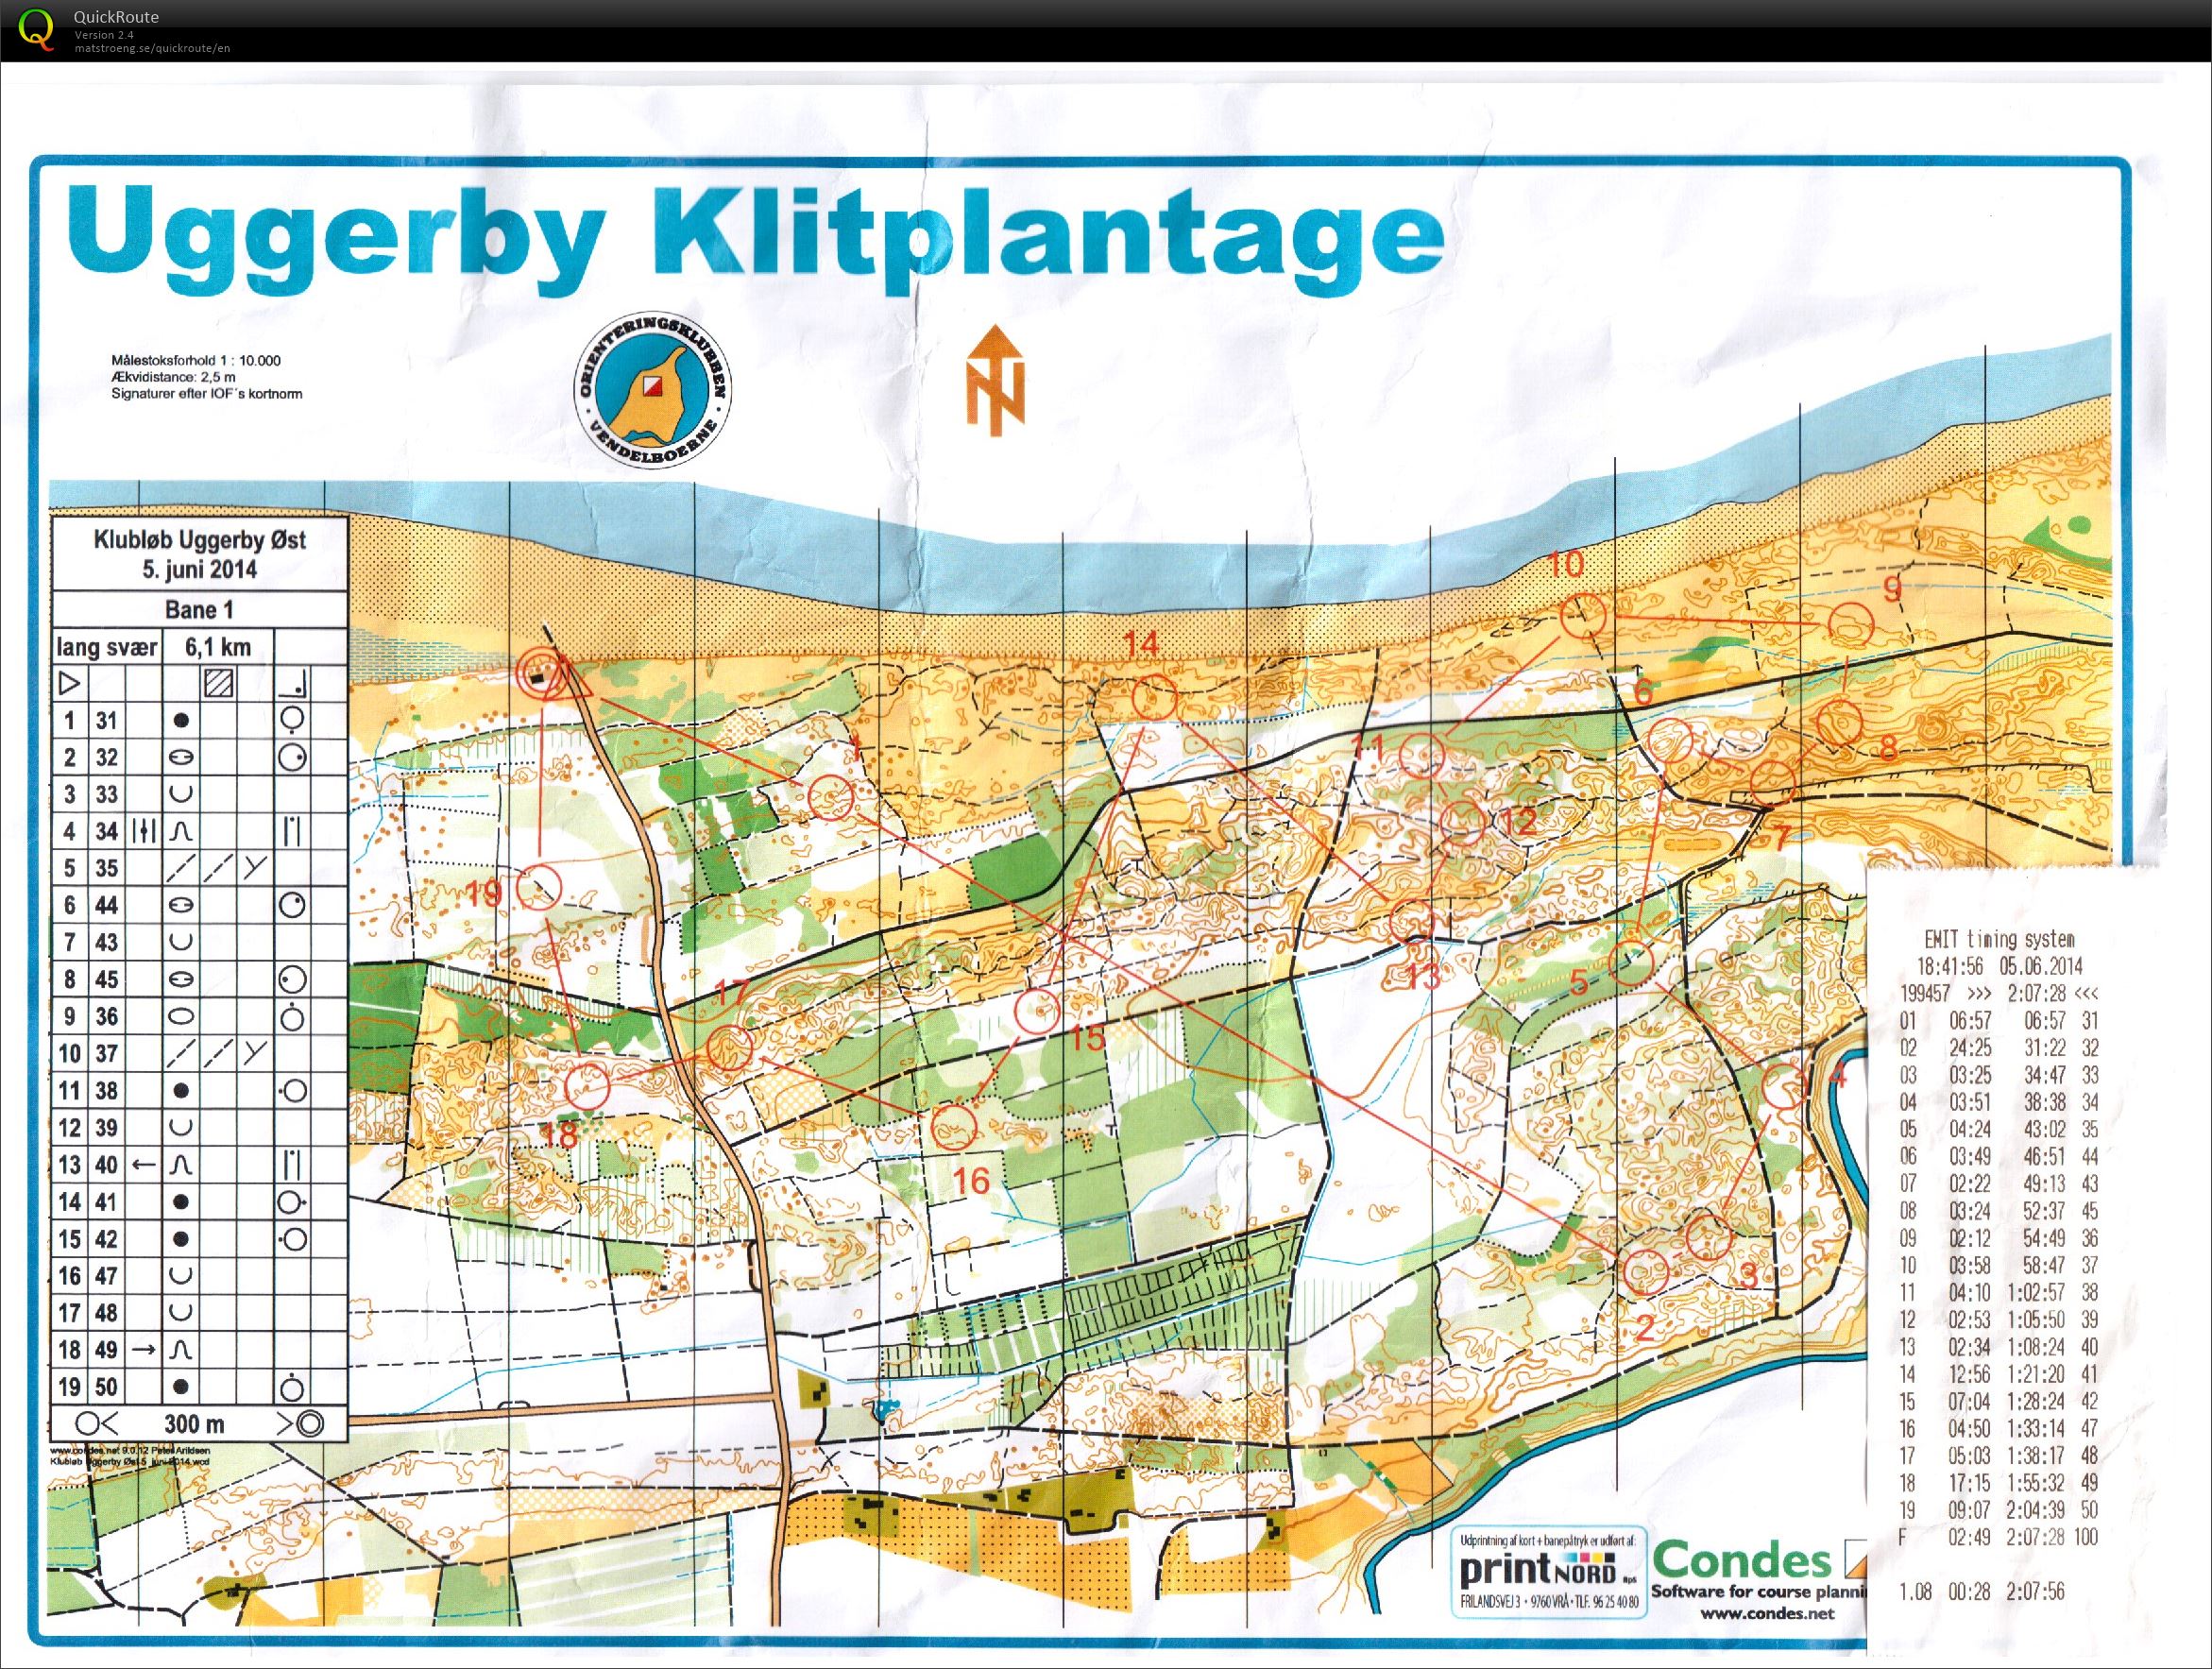 Uggerby Klitplantage, 05-06-2014 (05-06-2014)